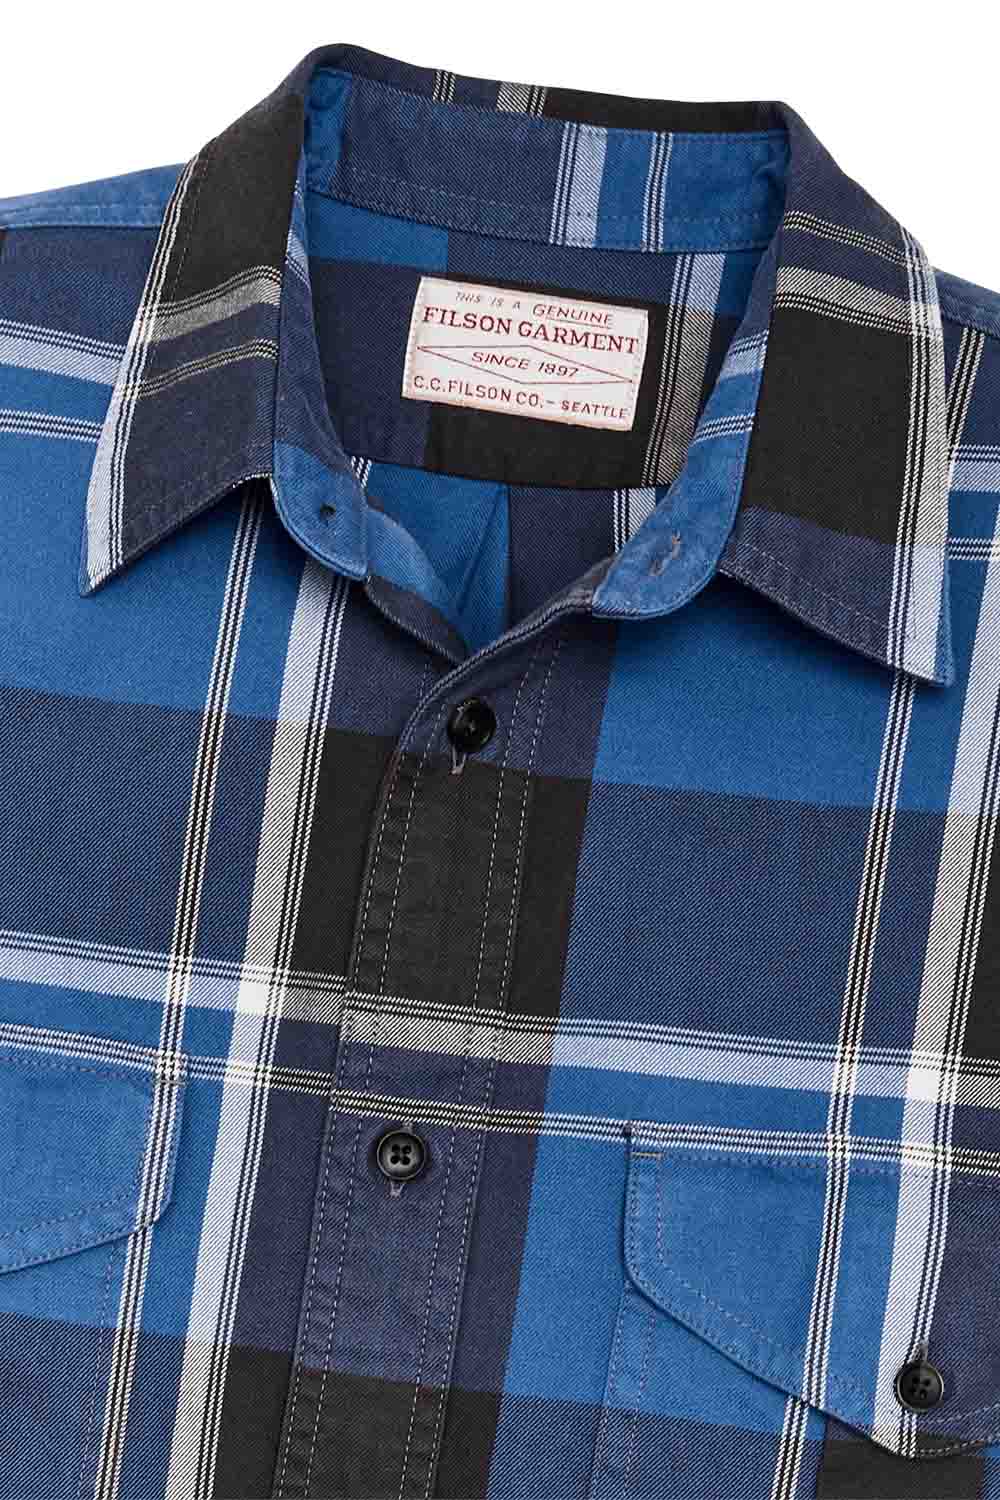 Filson - Light Weight Alaskan Guide Shirt - Blue/Black/White Plaid - Collar